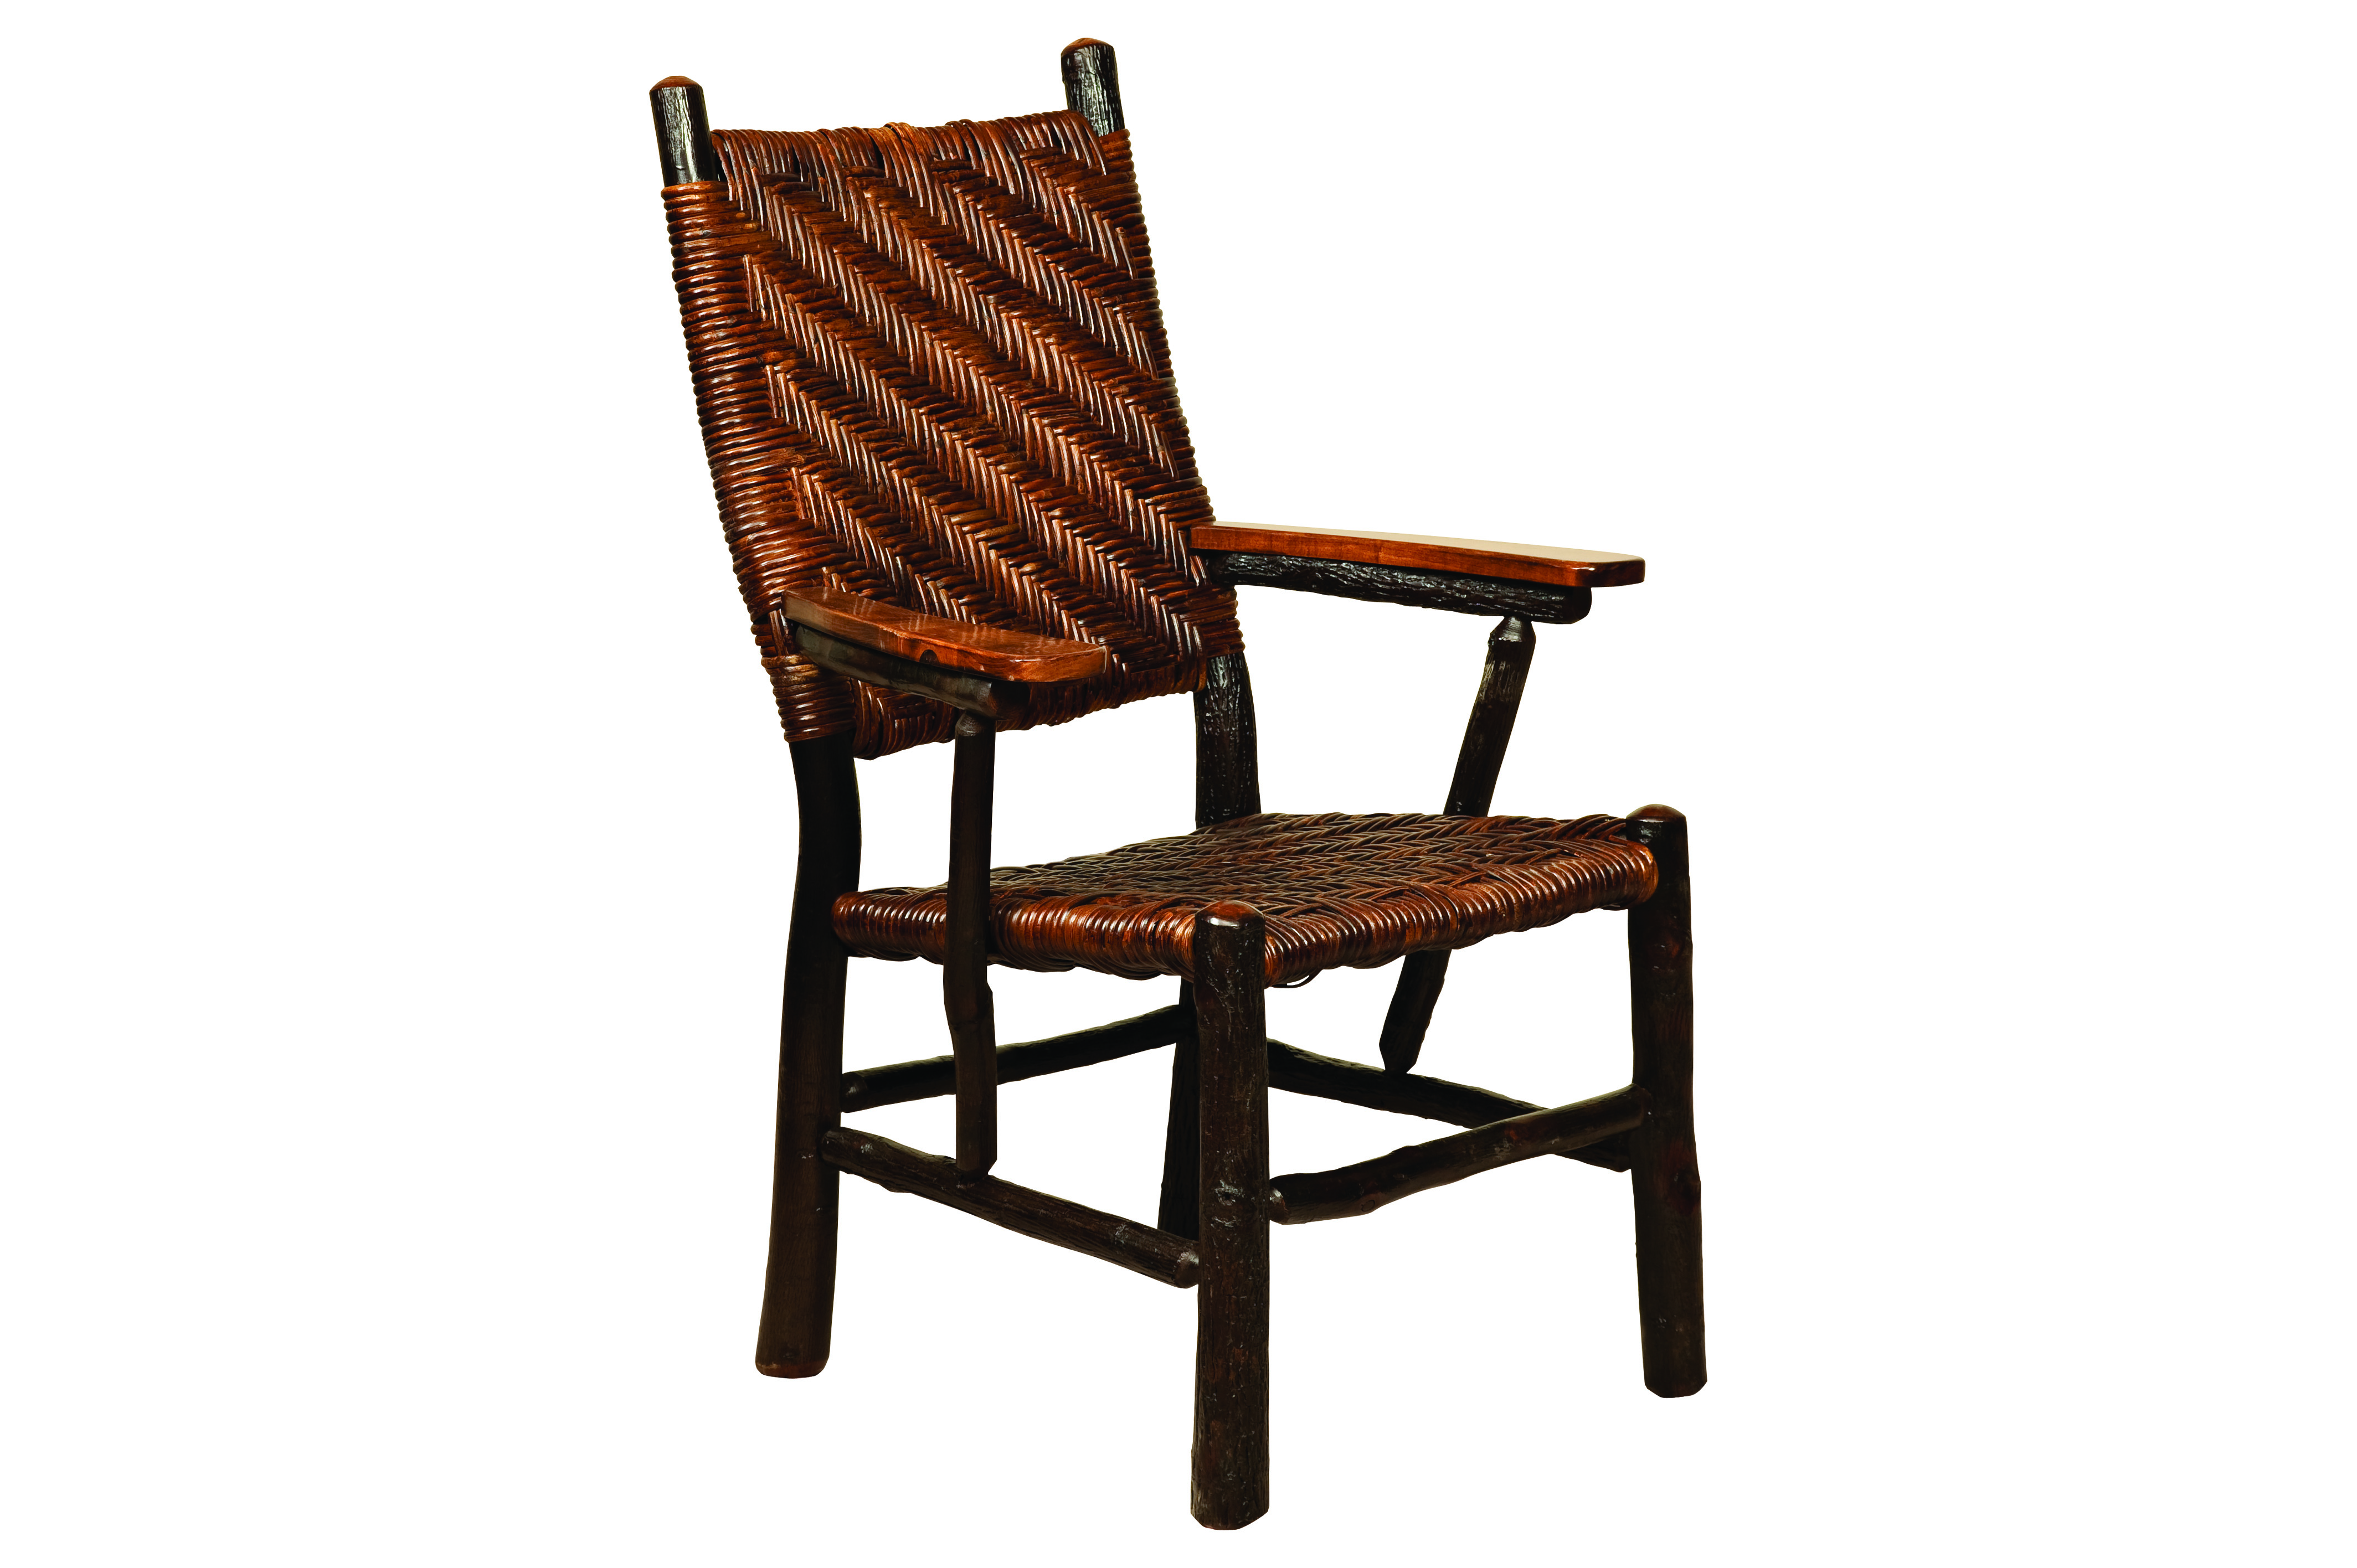 https://0201.nccdn.net/1_2/000/000/129/d47/159_Fireside-Chair-Cane.jpg